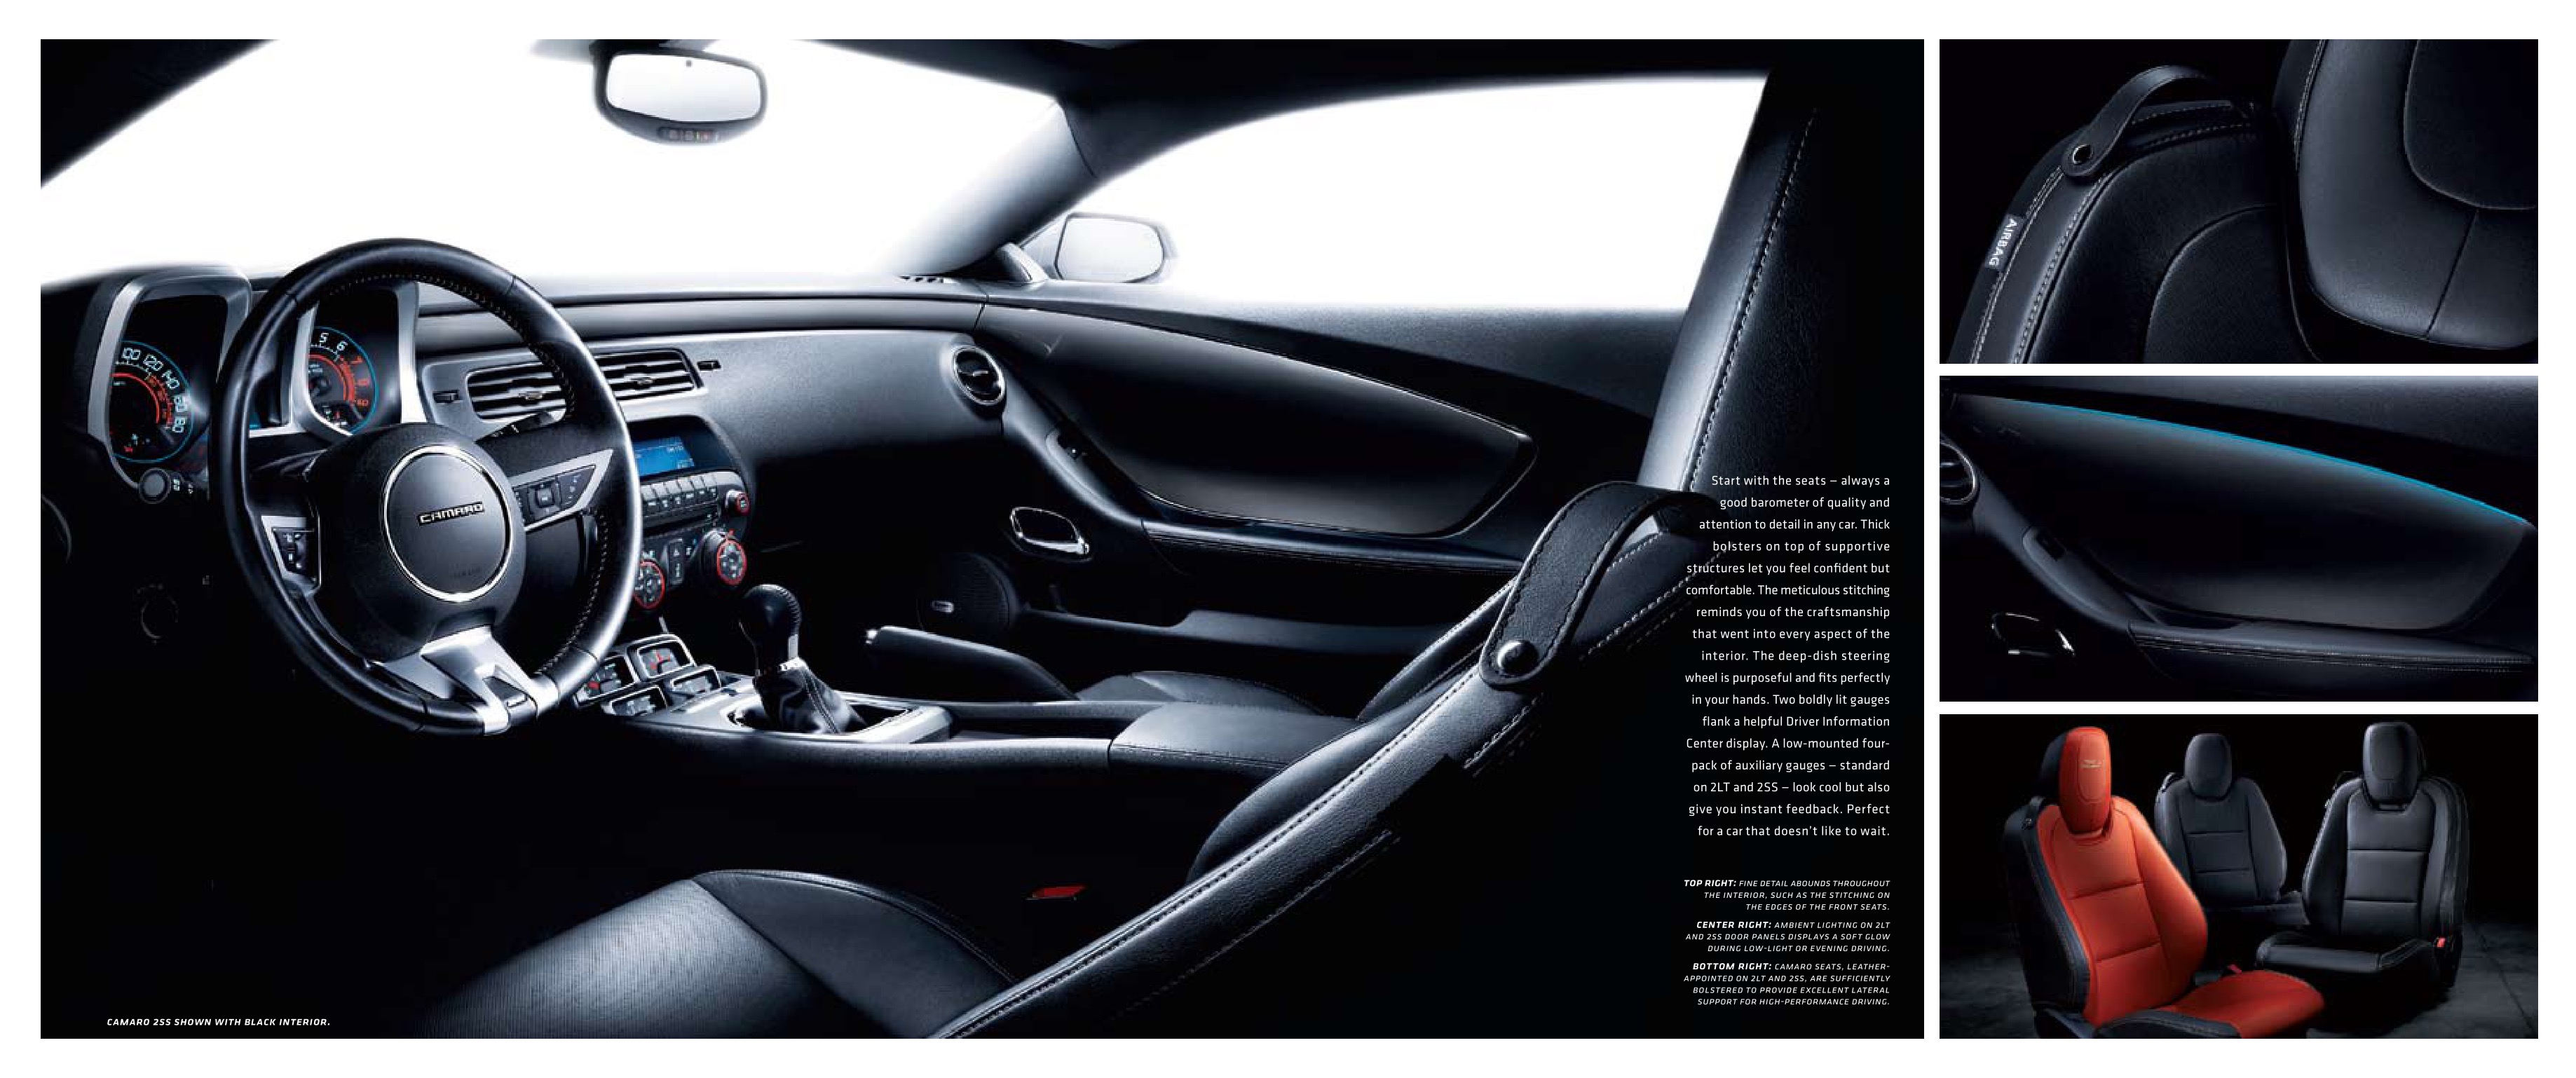 2010 Chev Camaro Brochure Page 8